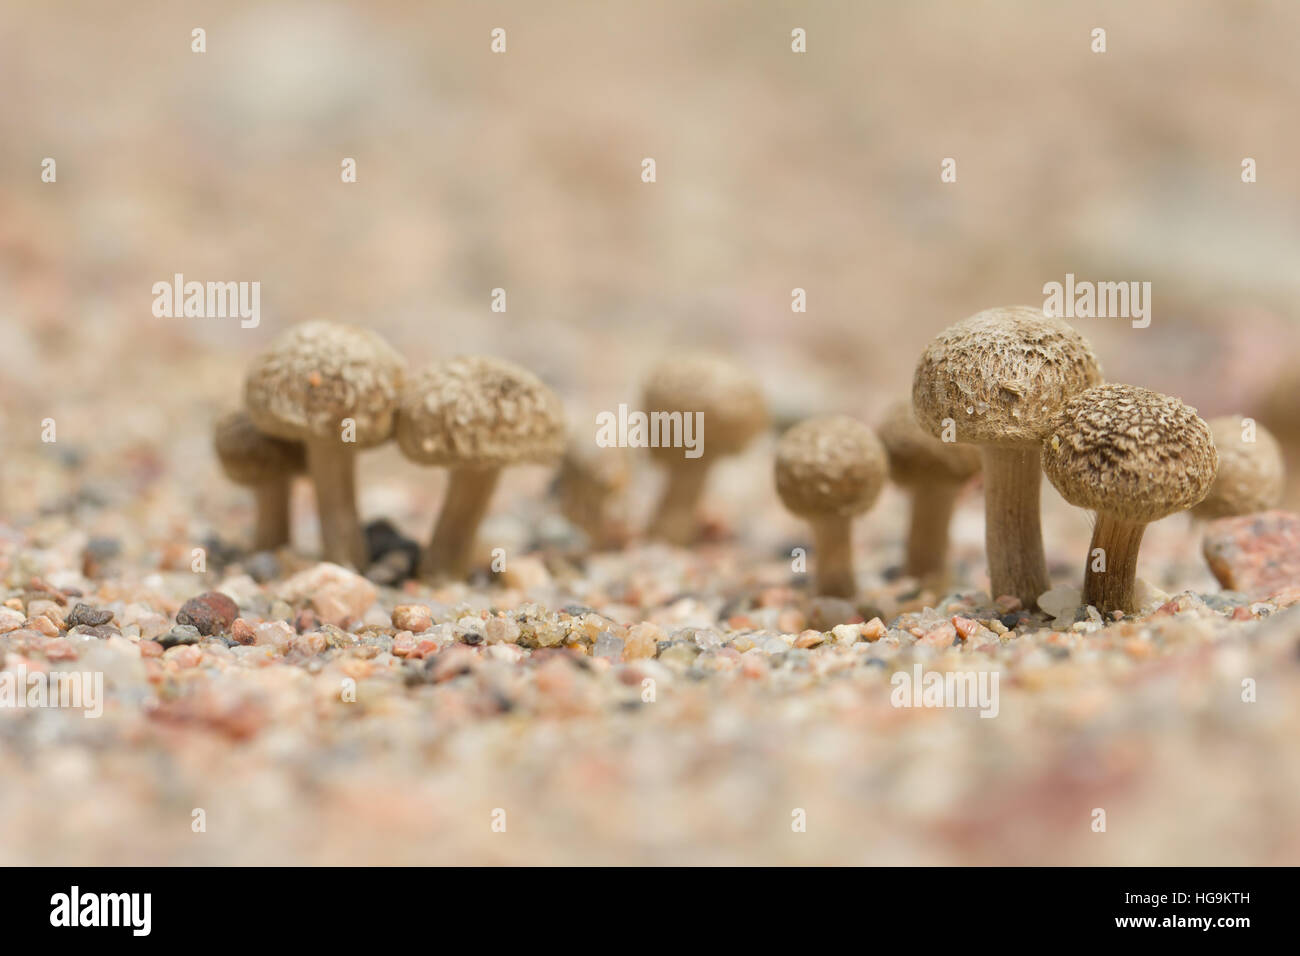 Fiber head mushroom Stock Photo